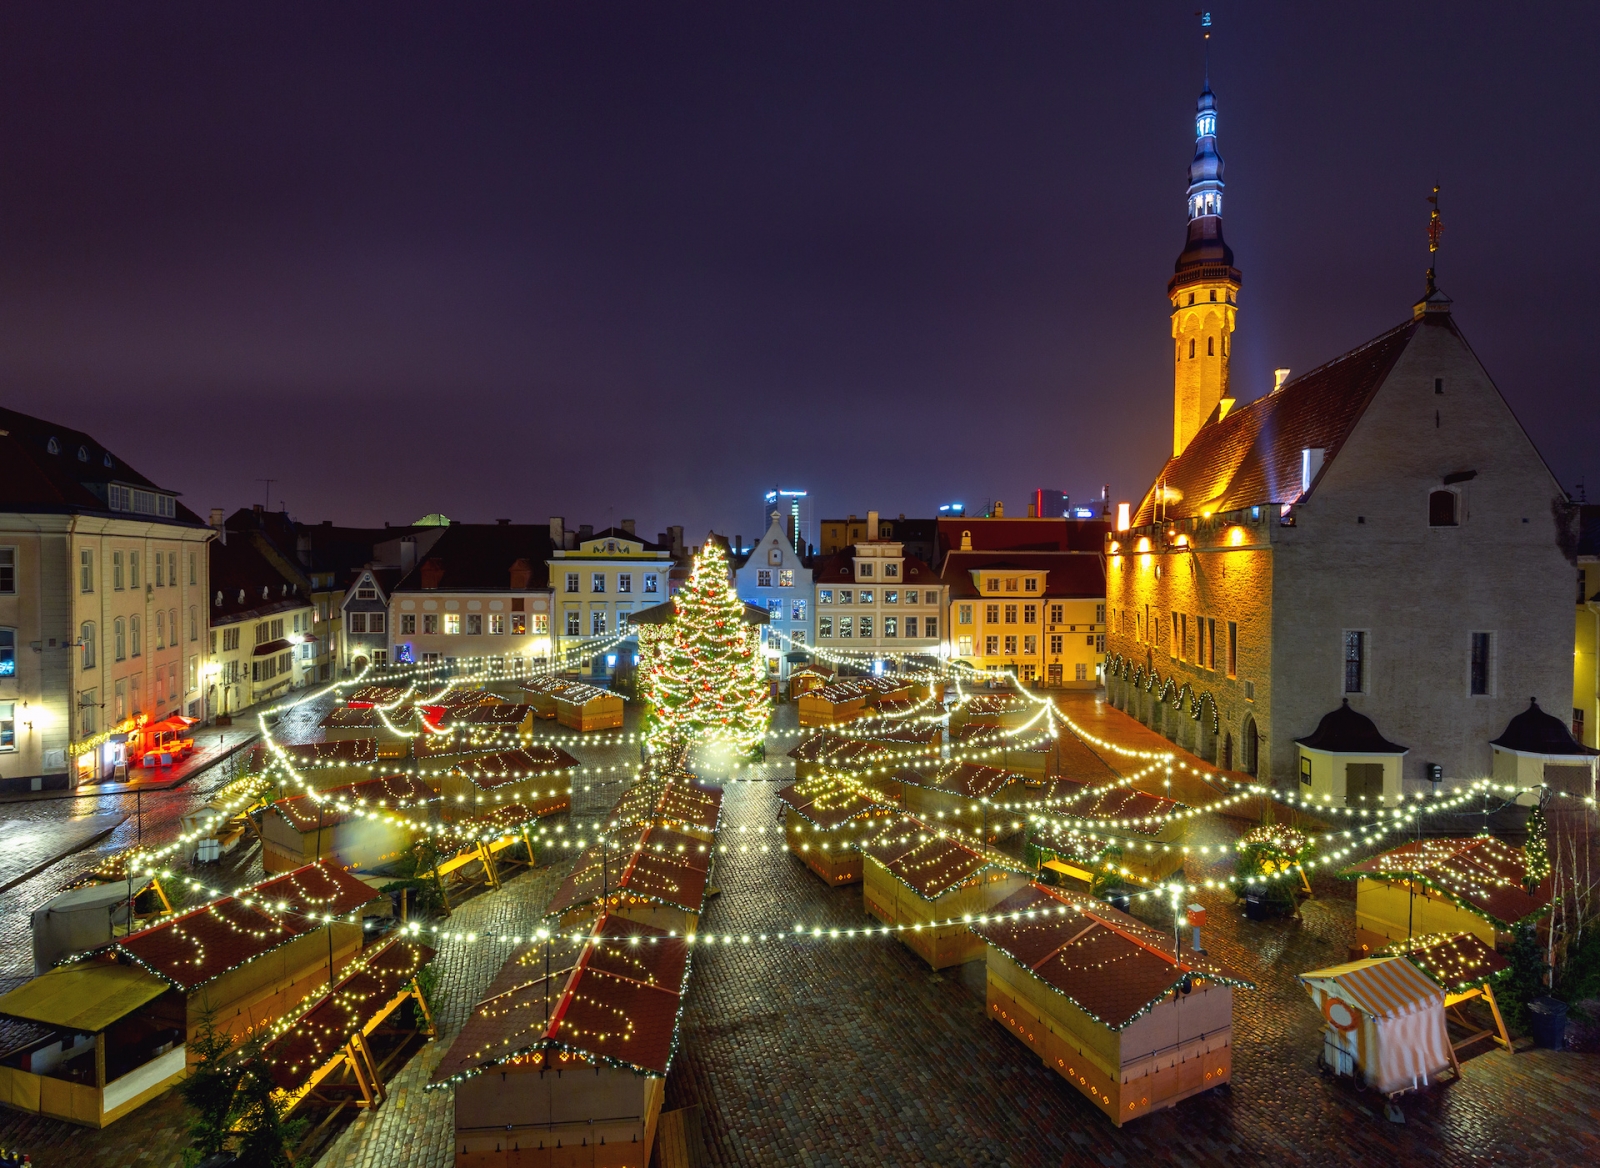 Таллинн.  Городская площадь в рождественском убранстве.